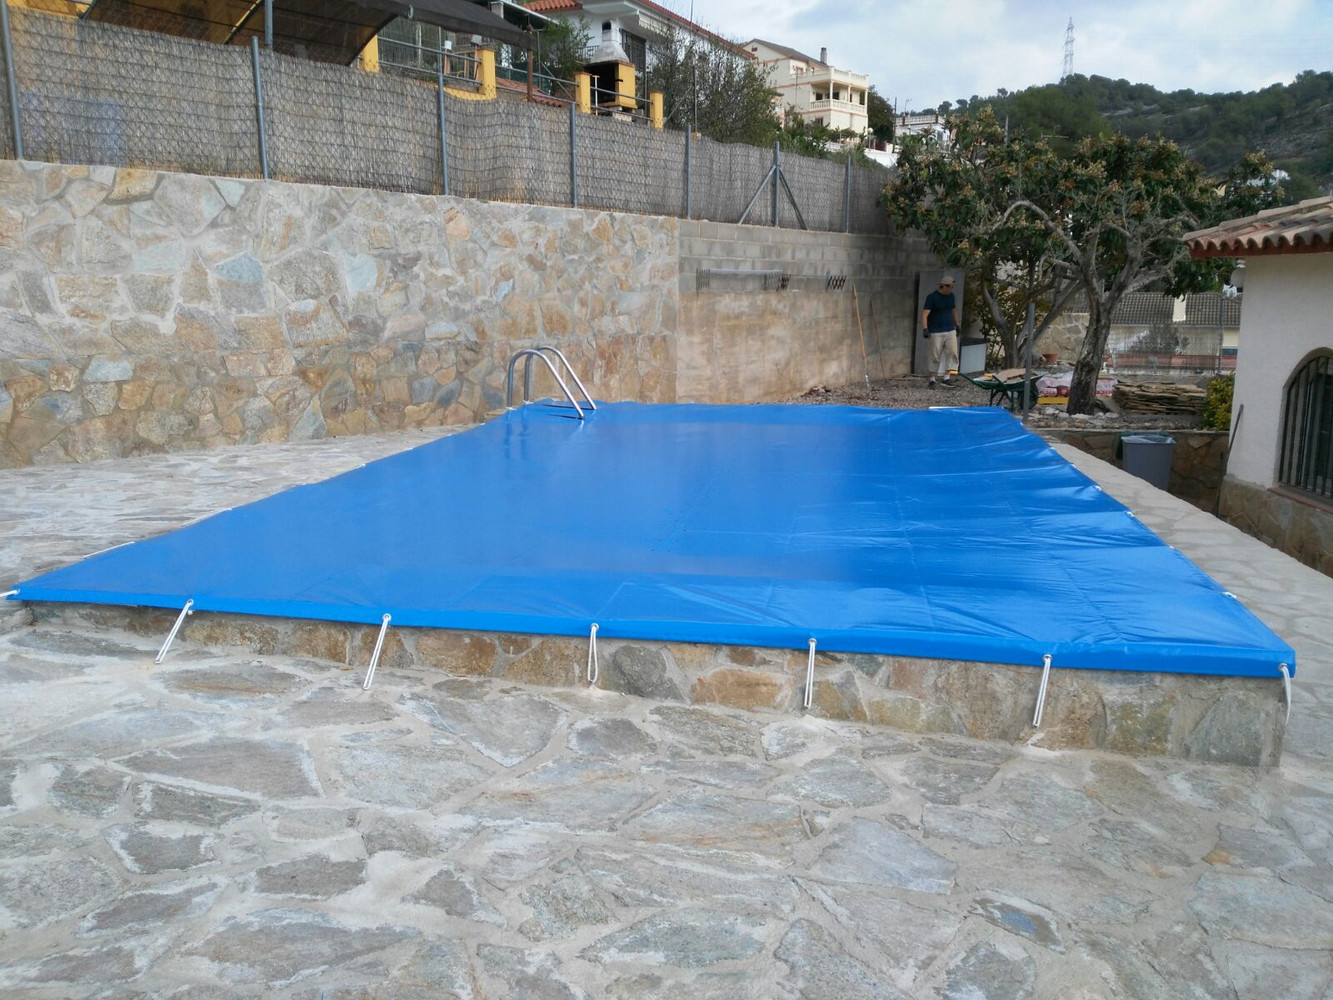 Exterior International Pool Protection Cobertor de Invierno para Piscina 6 x 3m más 15 cm por Cada Lado para Anclaje + Saco de Almacenaje de Regalo / Gris de Color Gris 6,3 x 3,3m Interior